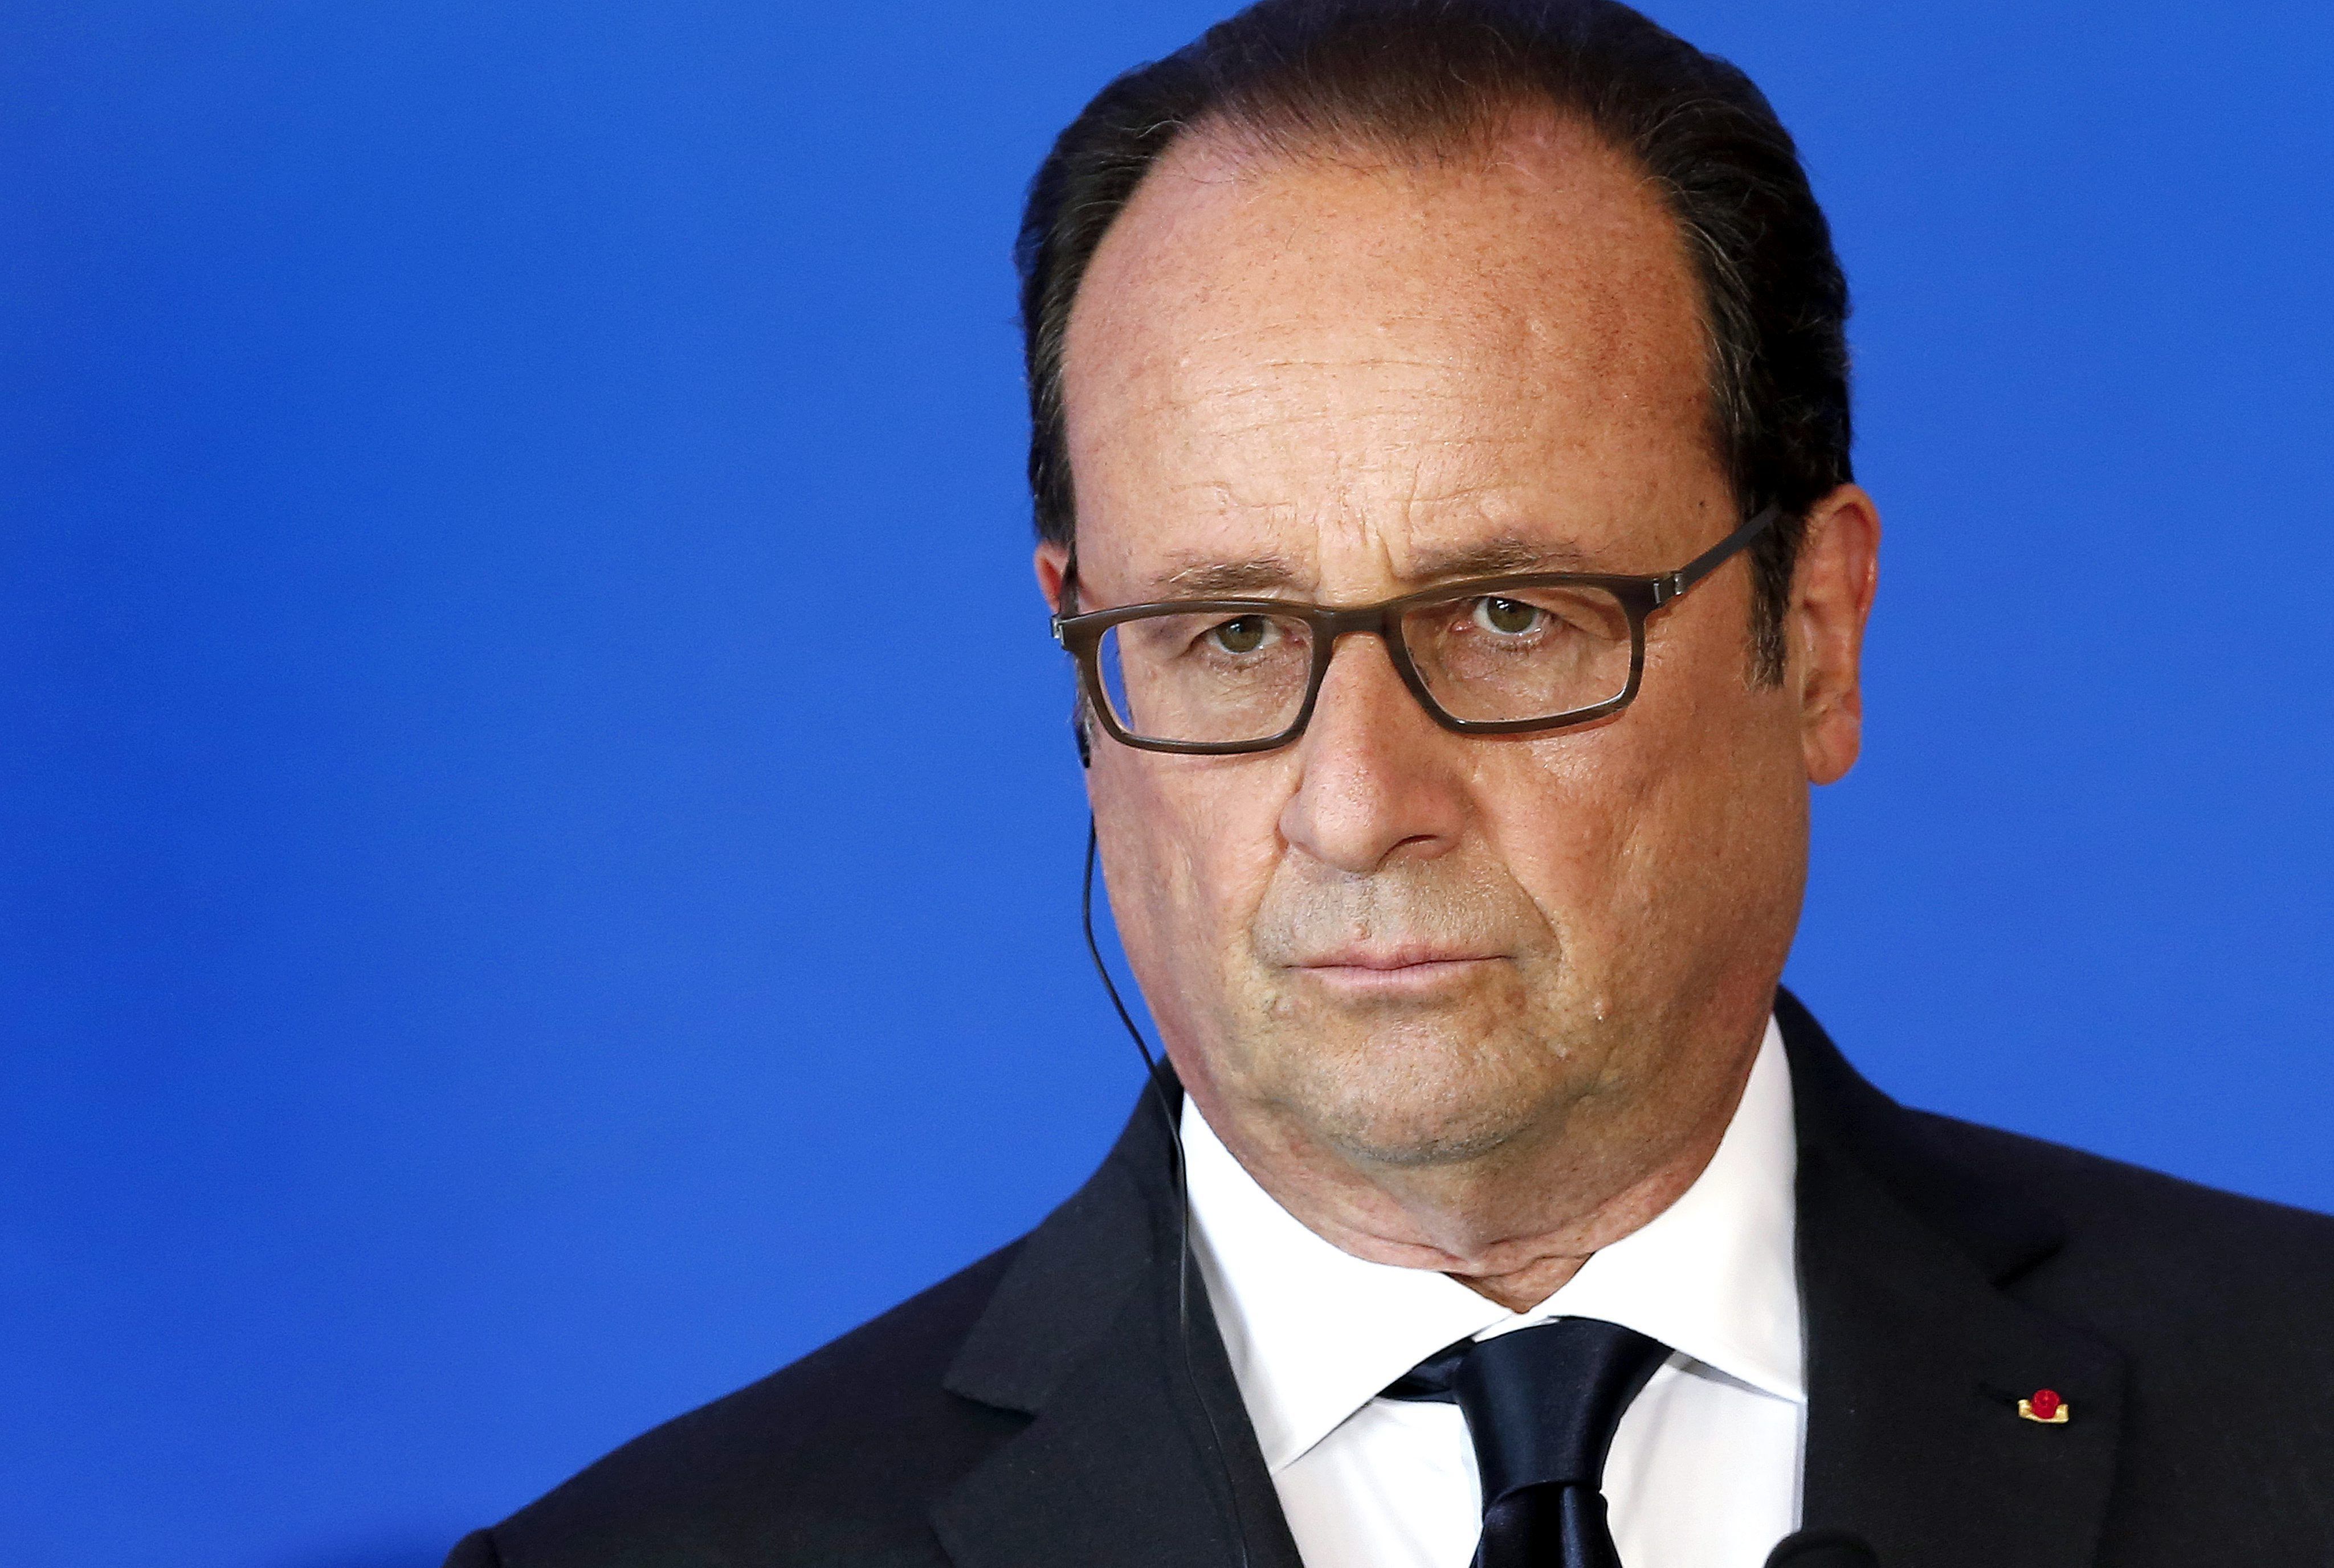 Hollande alcanza niveles mínimos de popularidad